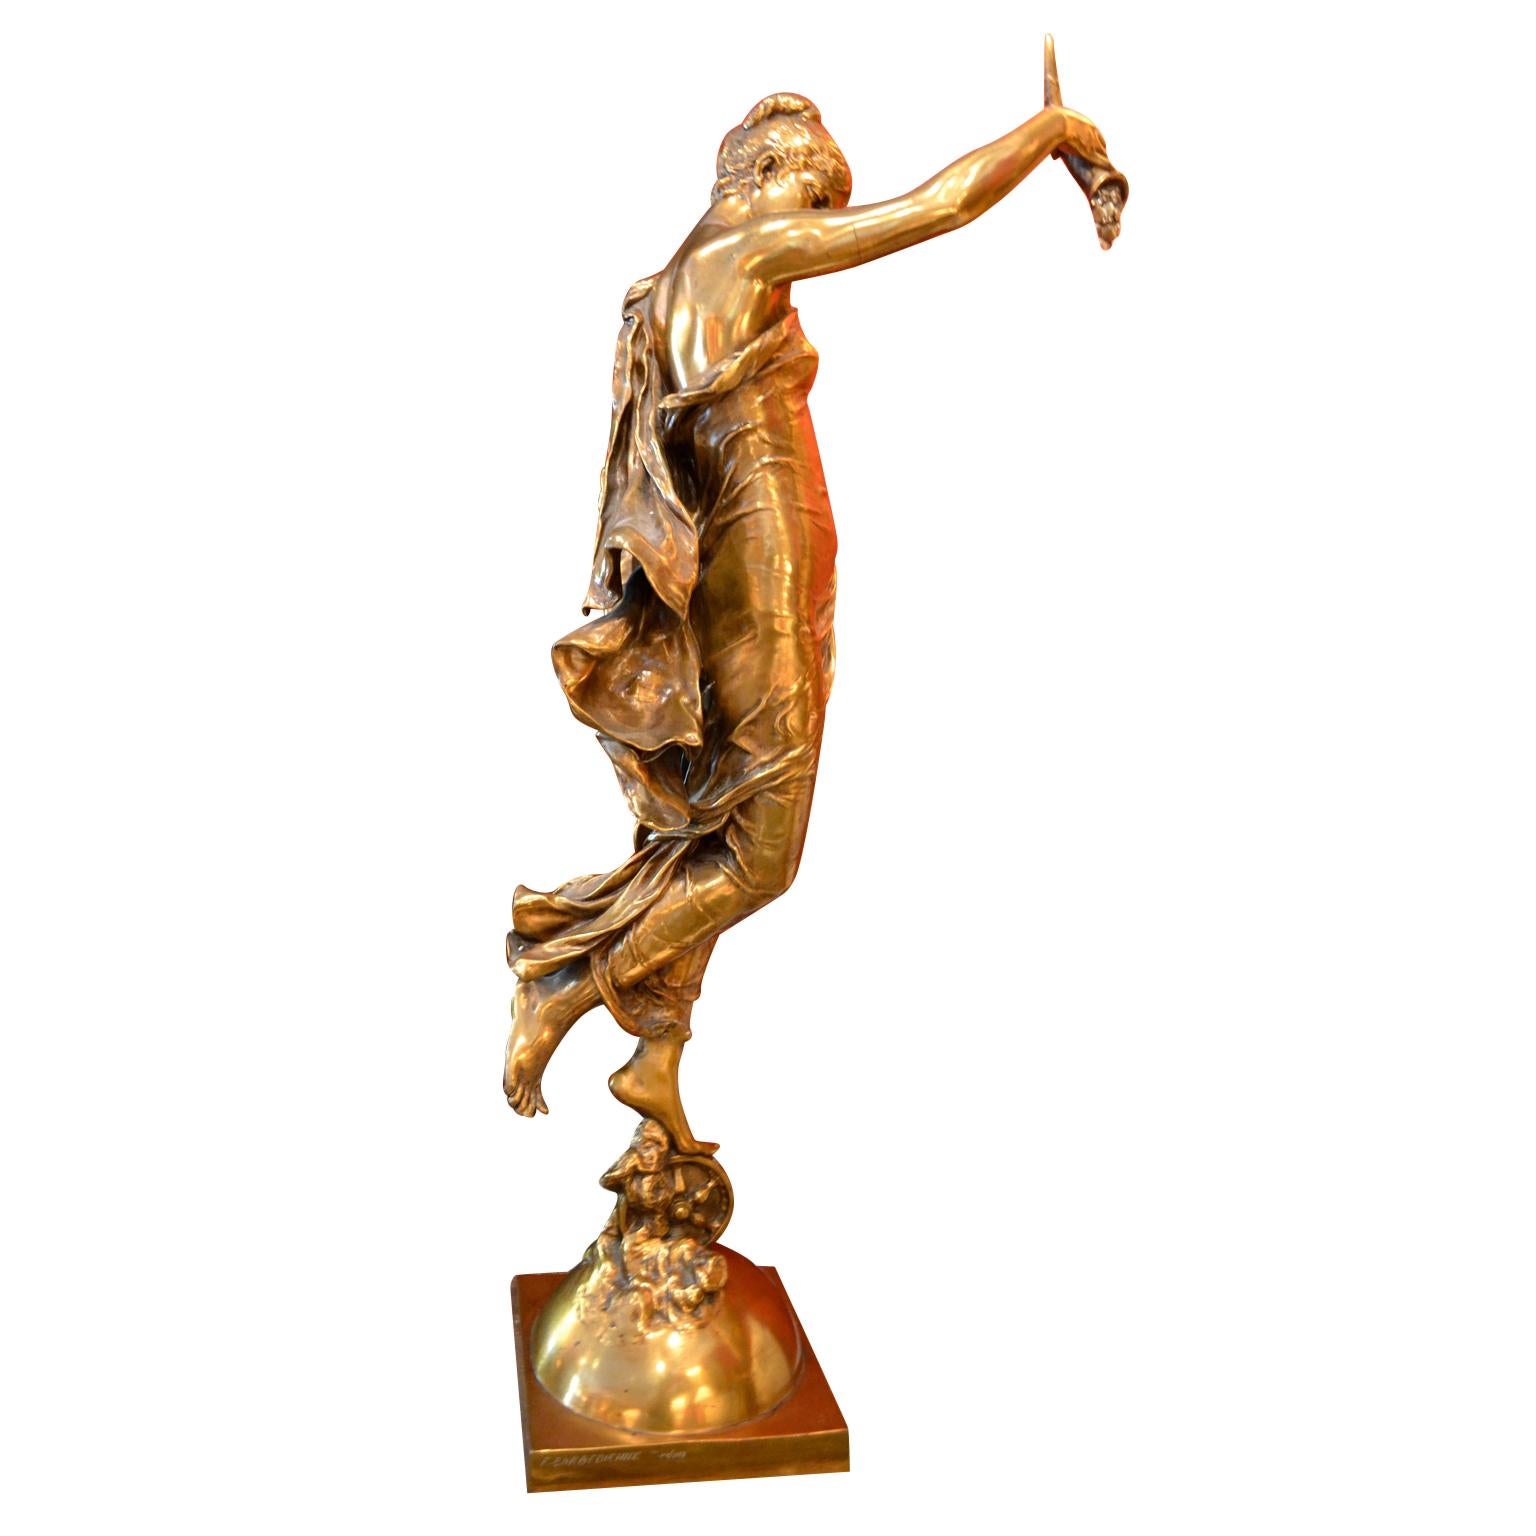 Art Nouveau Gilt Bronze Statue Titled “La Fortune” by Augustin Moreau-Vauthier